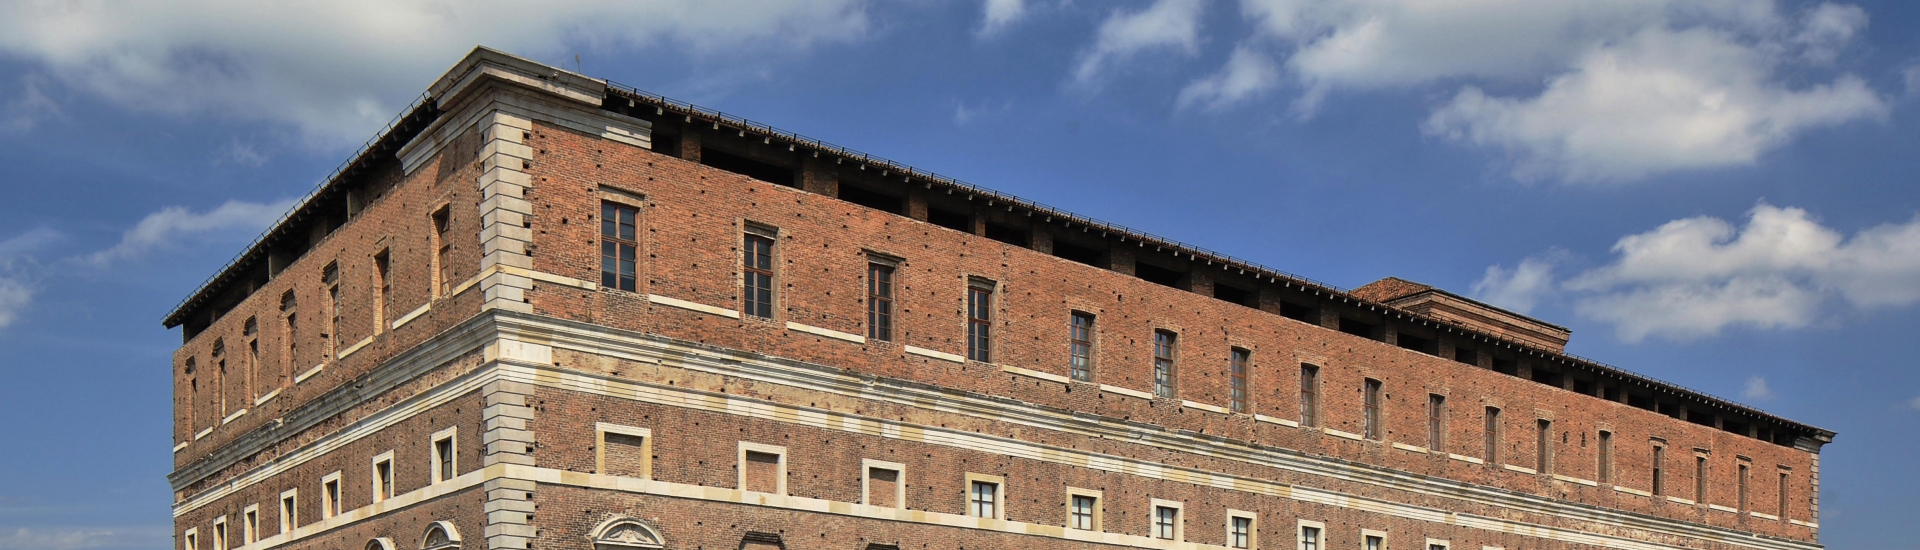 Rocca Viscontea (o Cittadella, resti) - Palazzo Farnese - Piacenza photo credits: |foto Pagani| - Musei civici di Palazzo Farnese